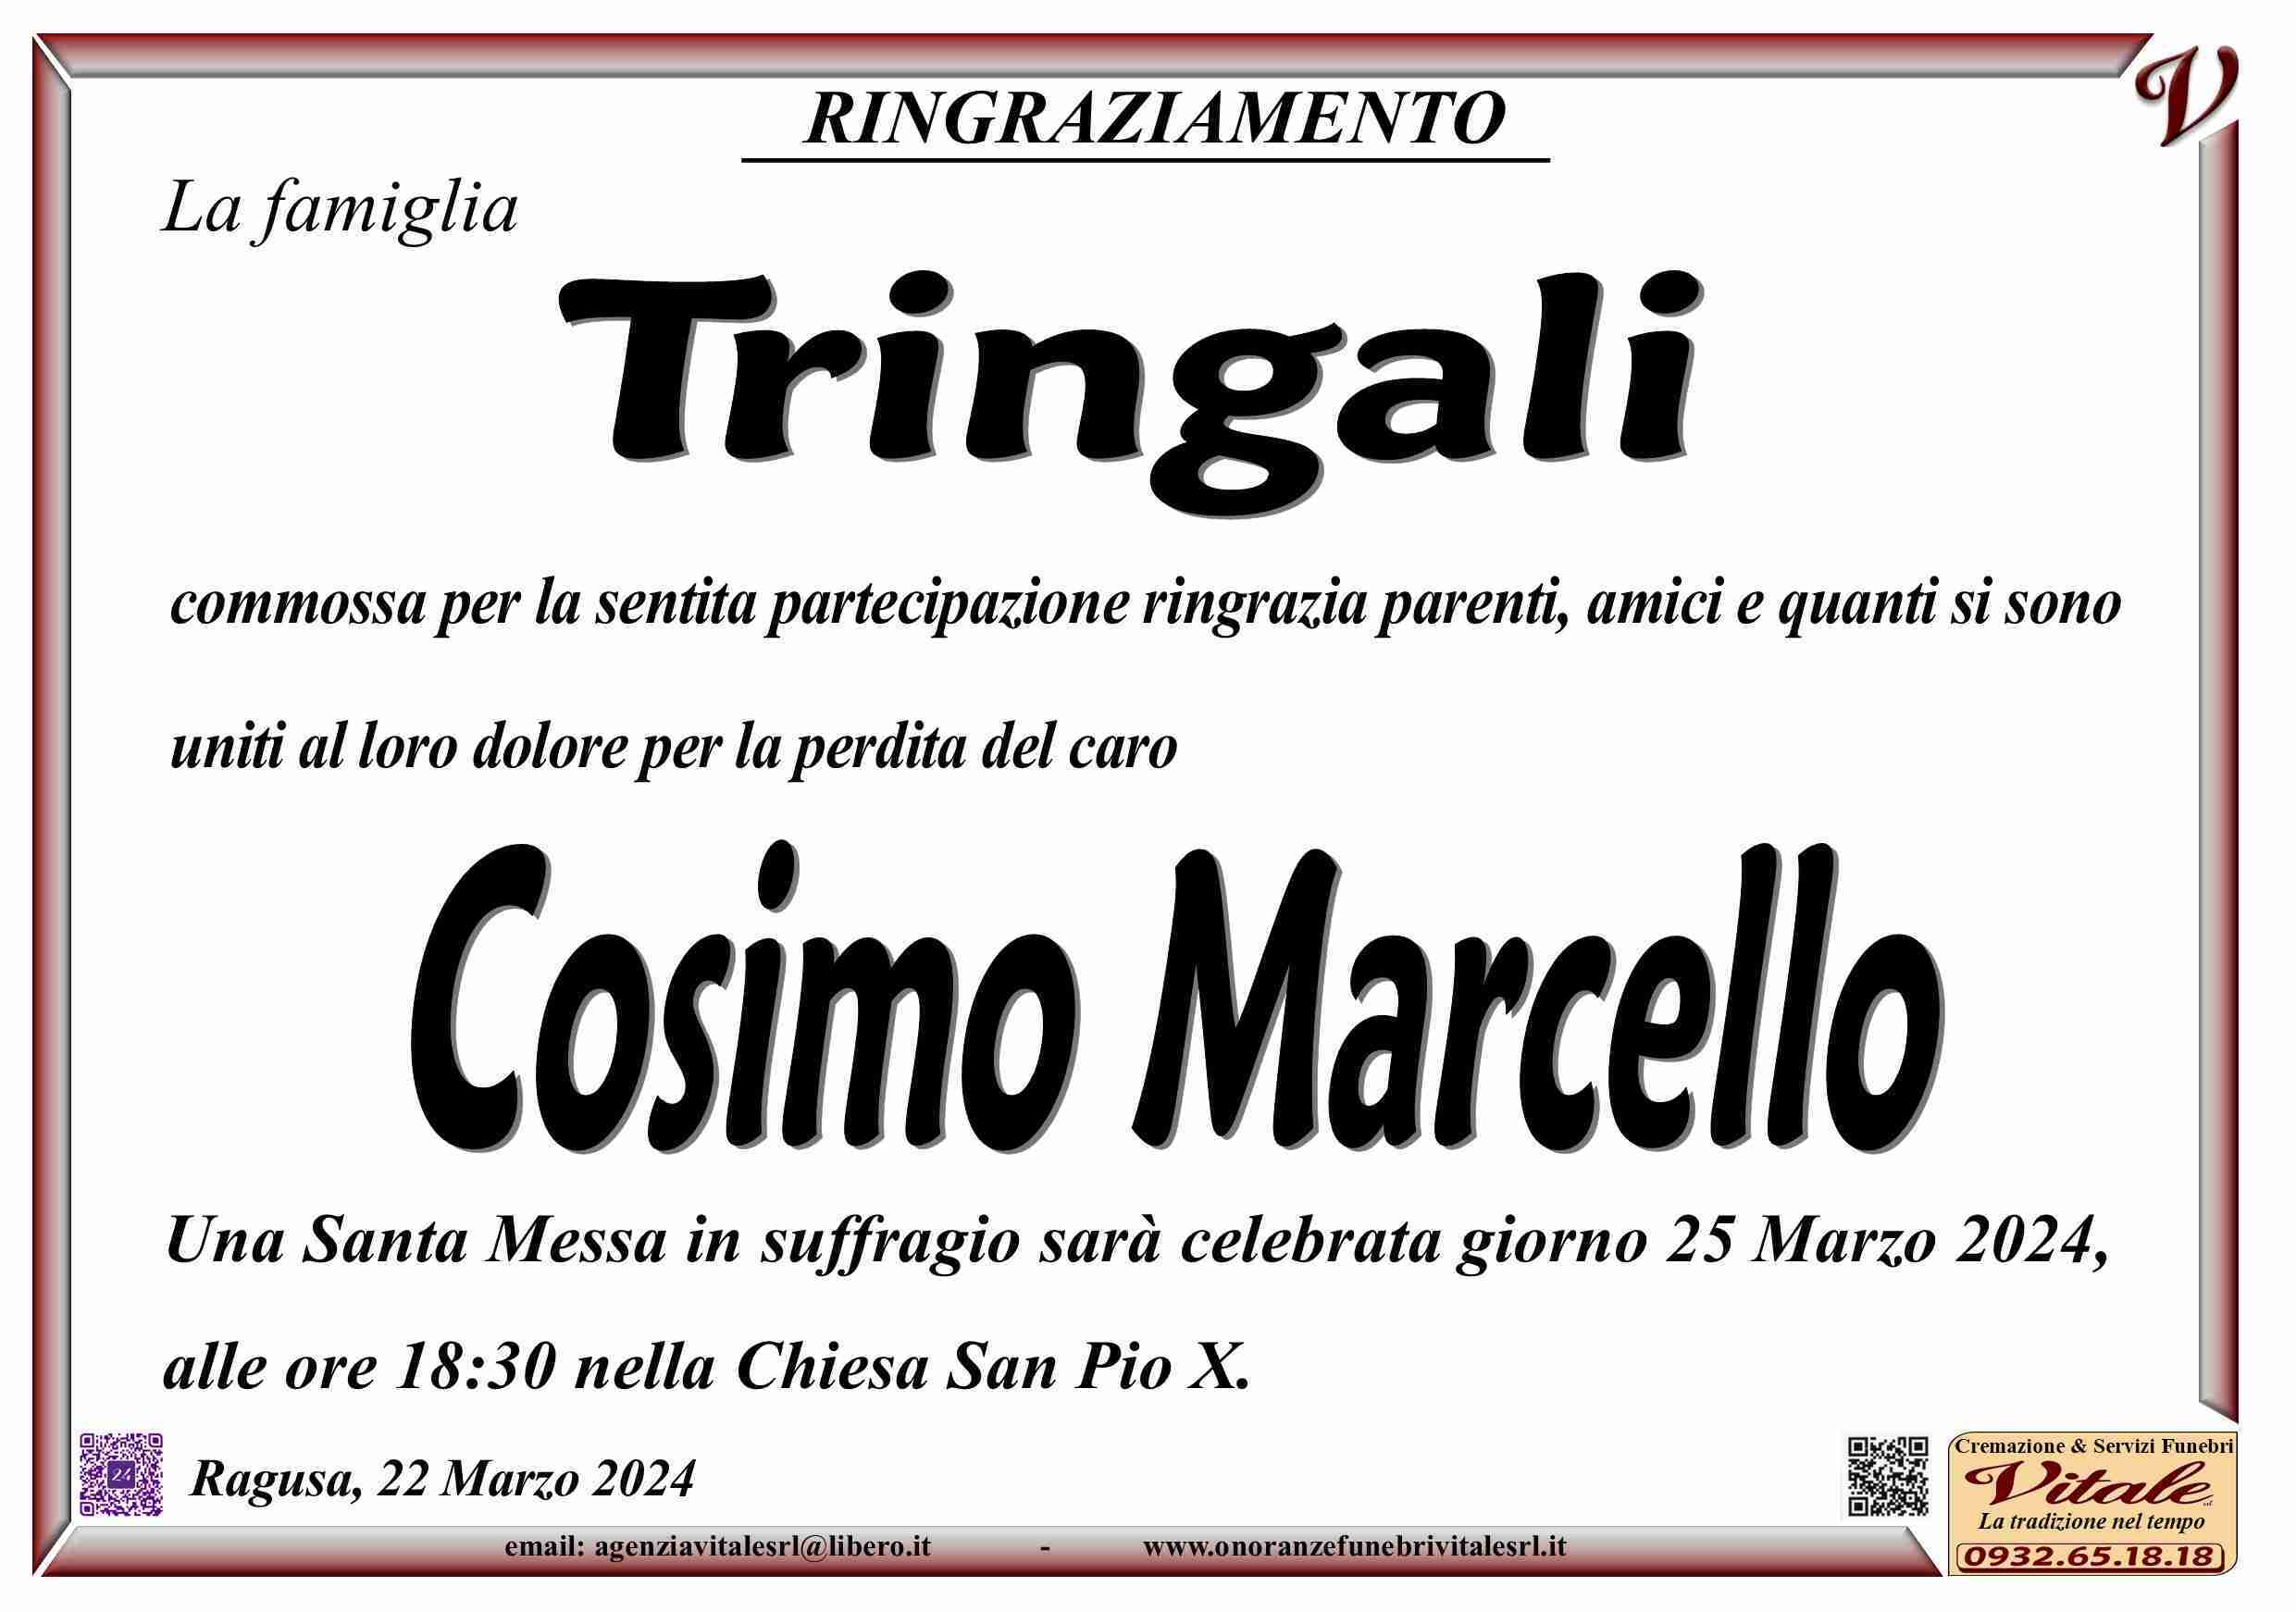 Cosimo Marcello Tringali